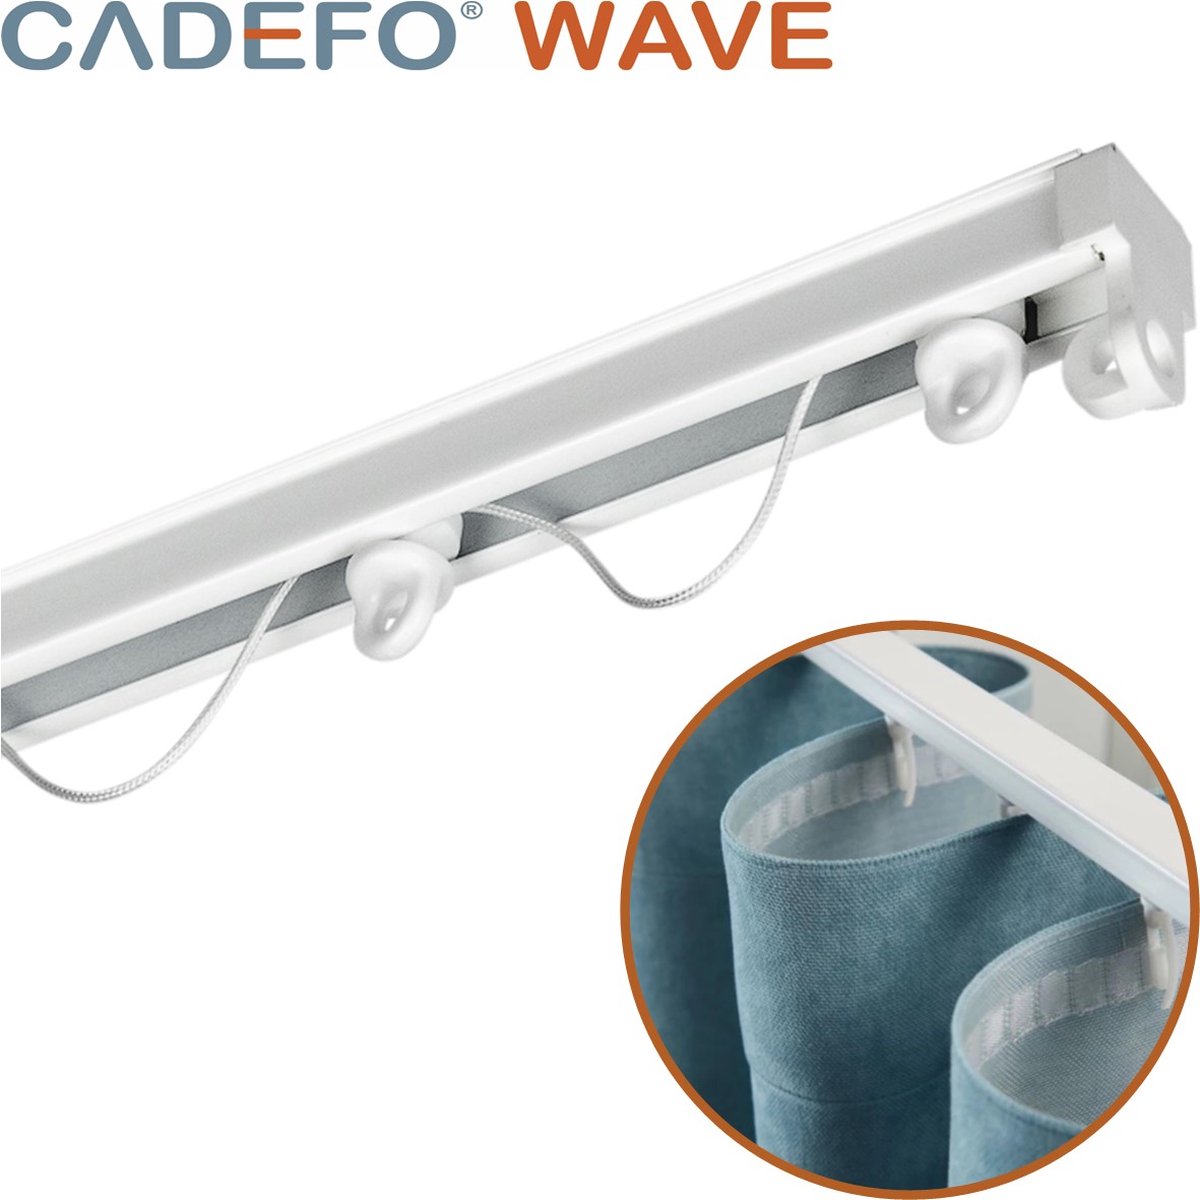 CADEFO WAVE (301 - 350 cm) Gordijnrails - Compleet op maat! - UIT 1 STUK - Leverbaar tot 6 meter - Plafondbevestiging - Lengte 301 cm